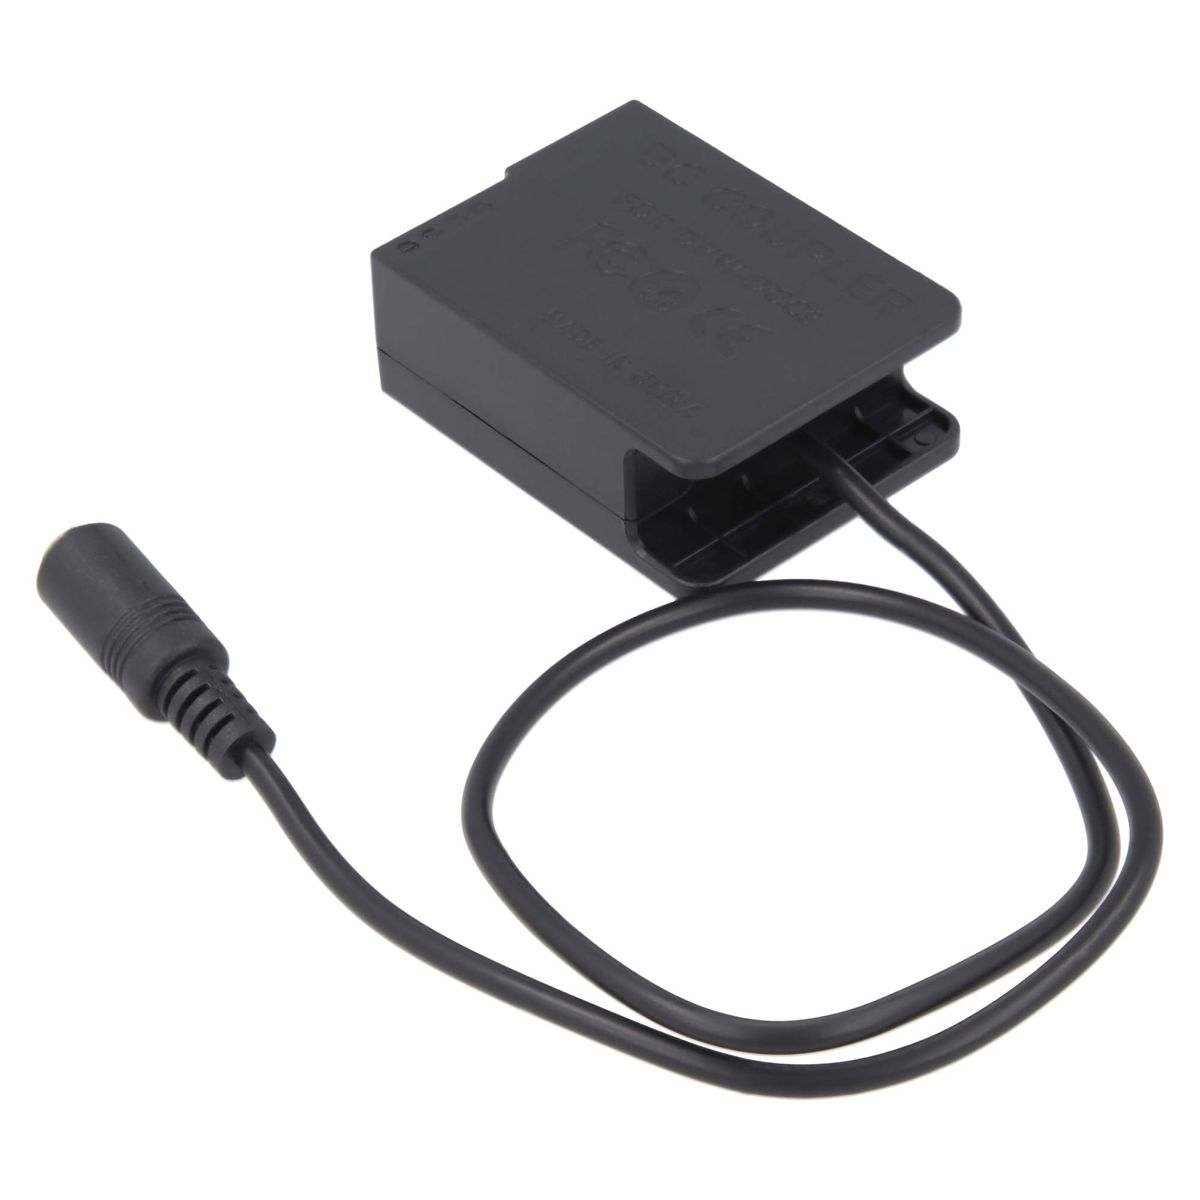 AKKU-KING USB-C Adapter Ladegerät Panasonic, DCC8 Kuppler Angabe kompatibel Panasonic mit + keine